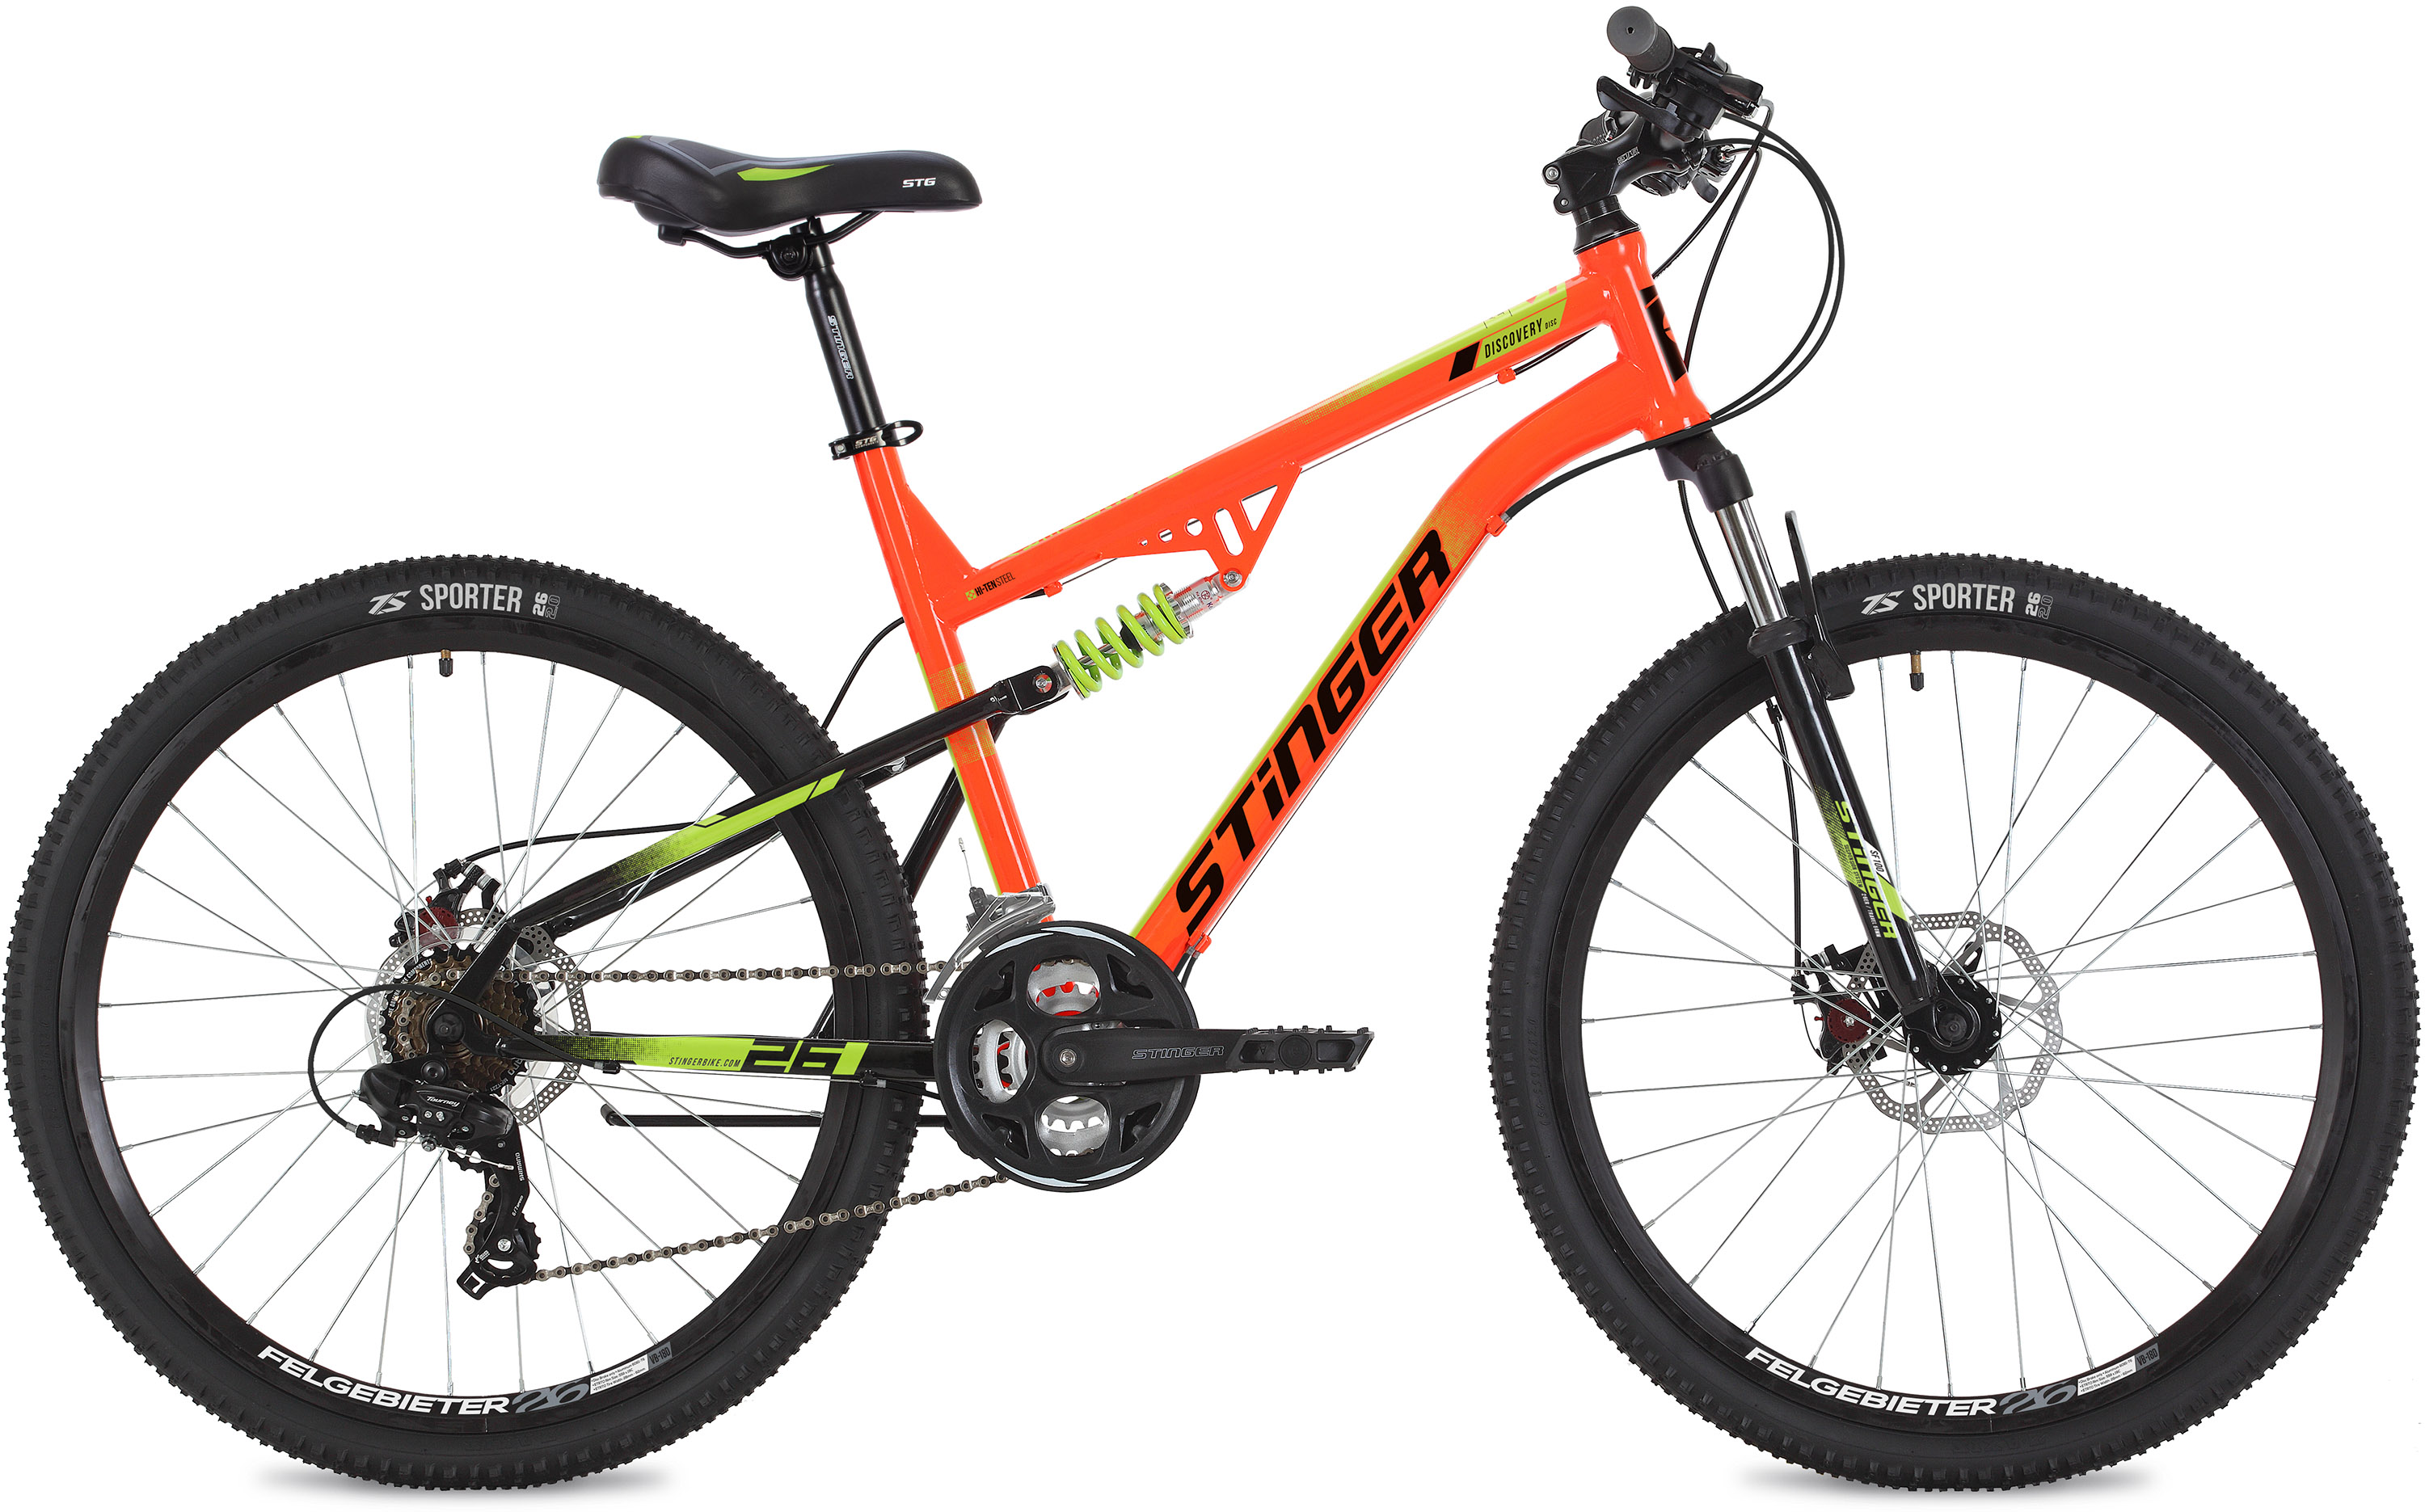  Отзывы о Двухподвесном велосипеде Stinger Discovery D 26 2020